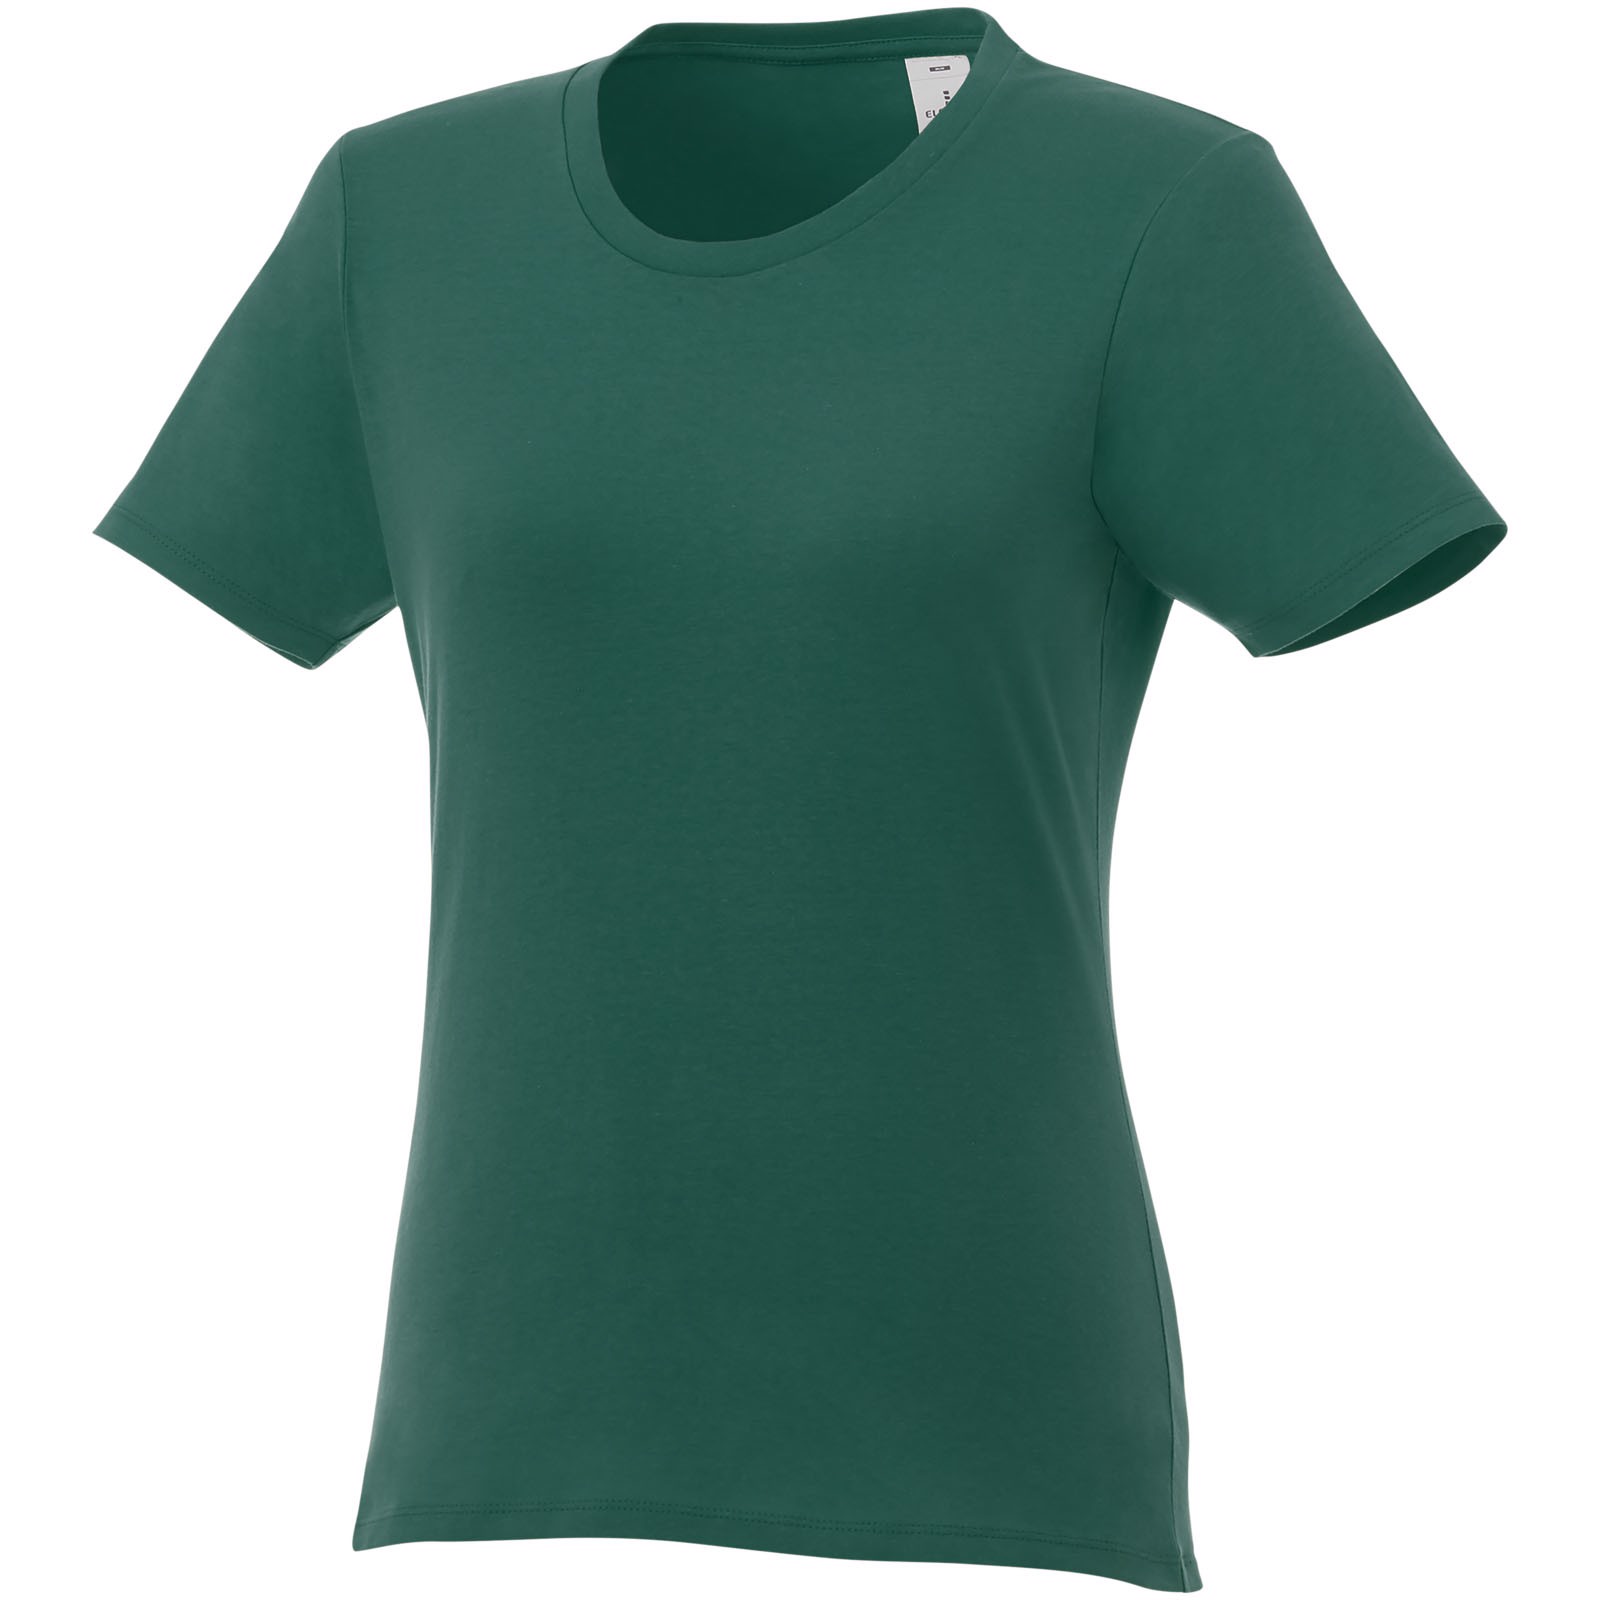 Dámské triko Heros s krátkým rukávem - Lesní zelená / XL